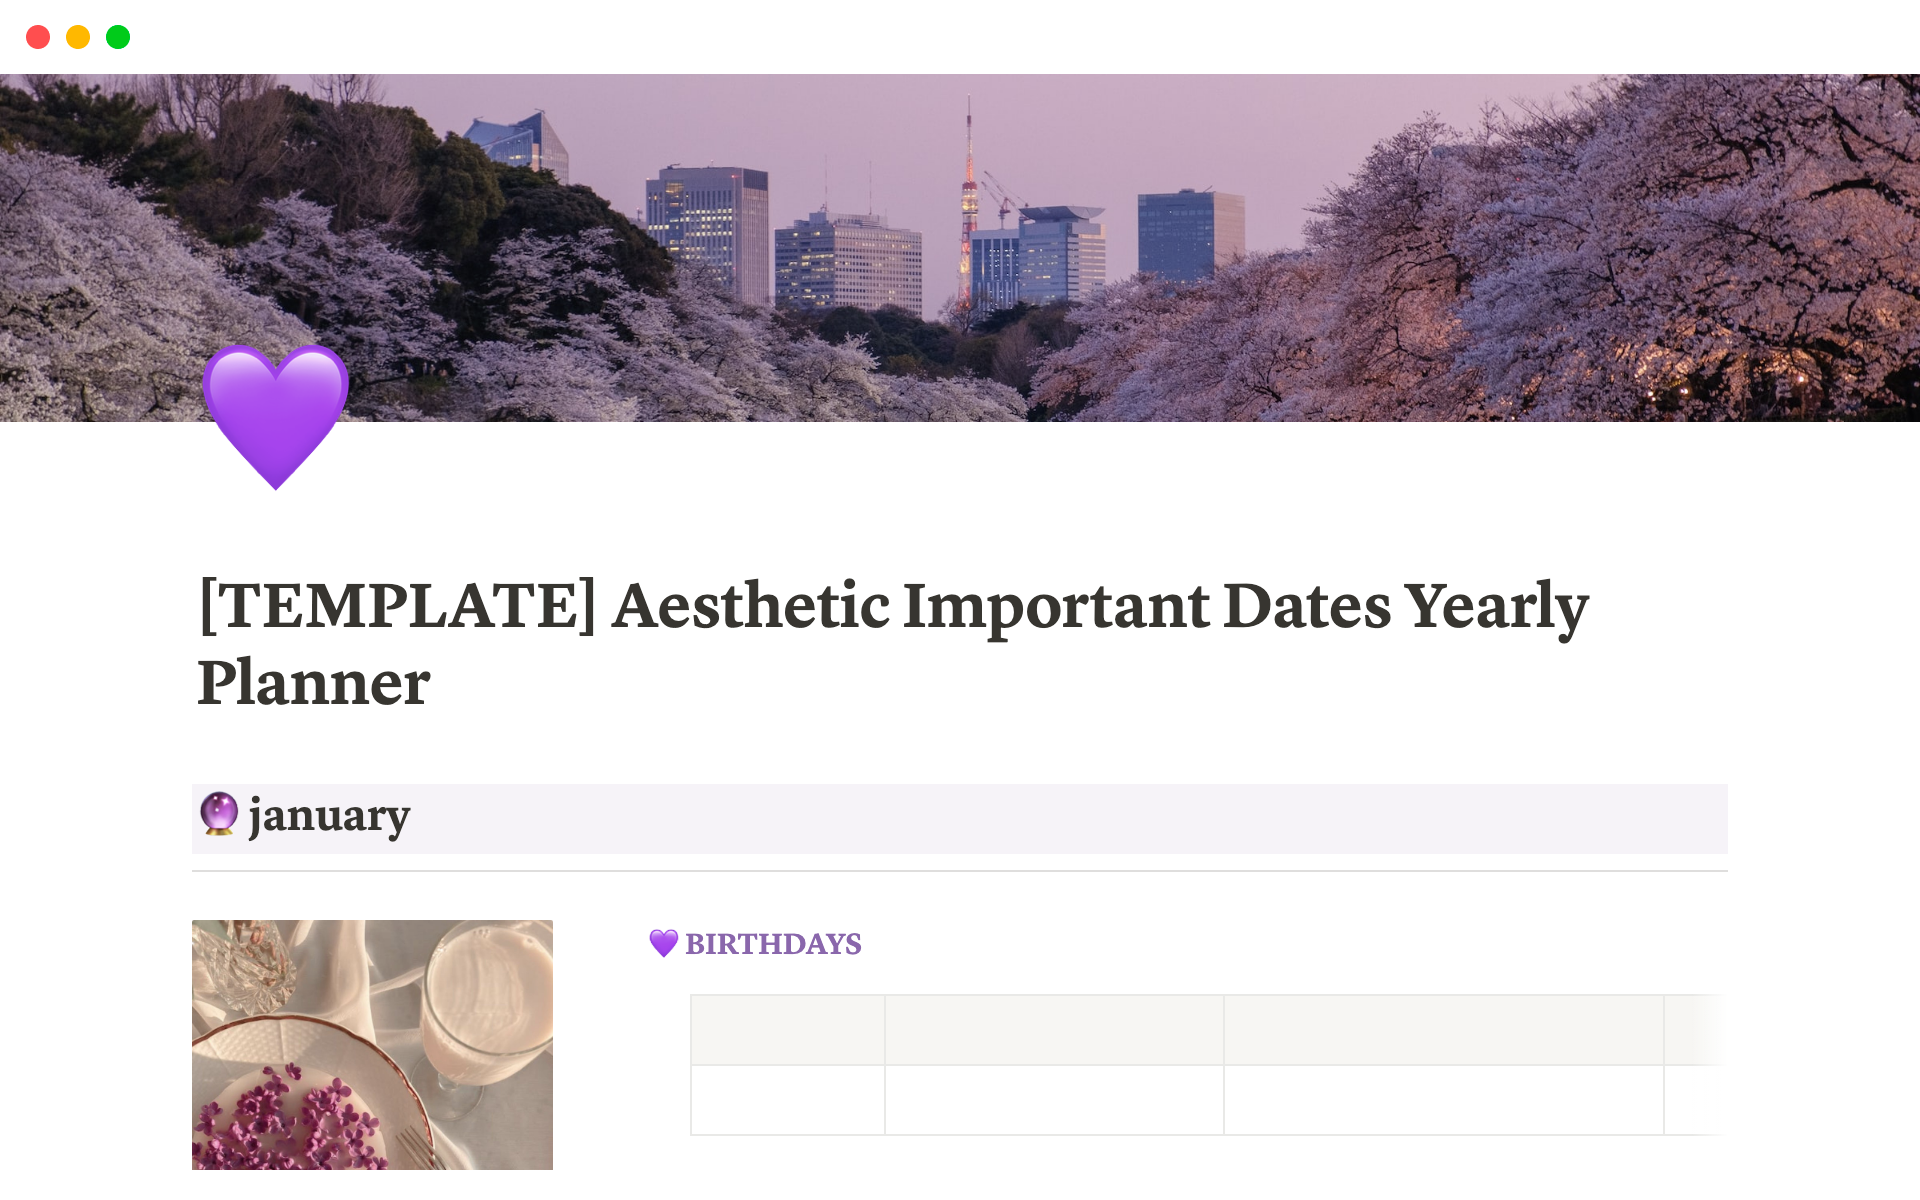 Vista previa de plantilla para Aesthetic Important Dates Yearly Planner